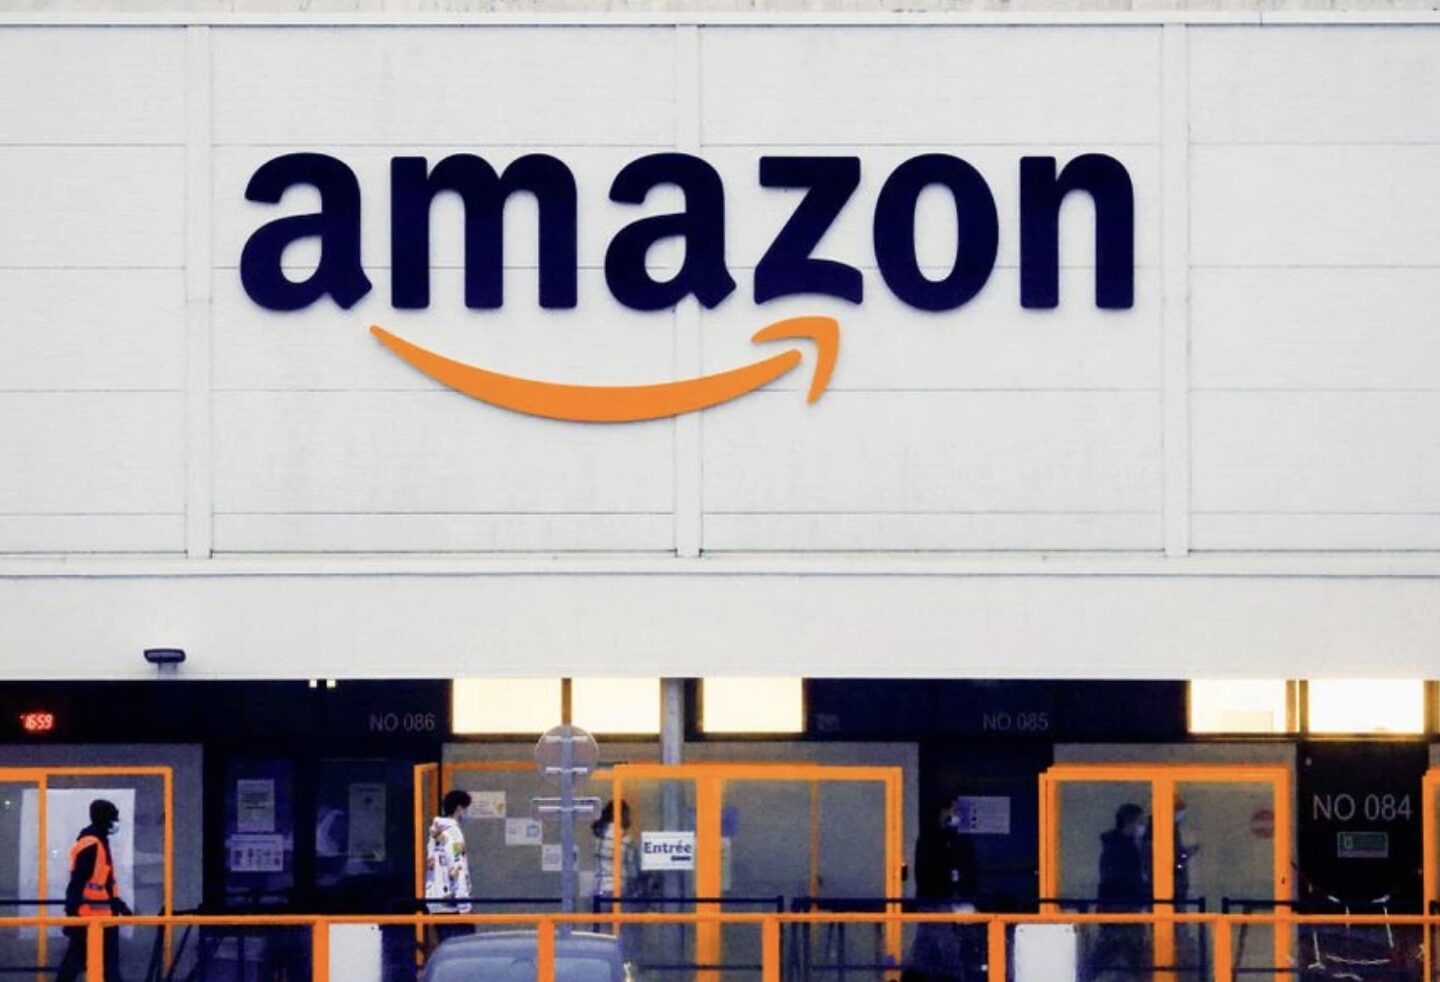 Sàn thương mại điện tử Amazone và Các sản phẩm và dịch vụ của Amazon